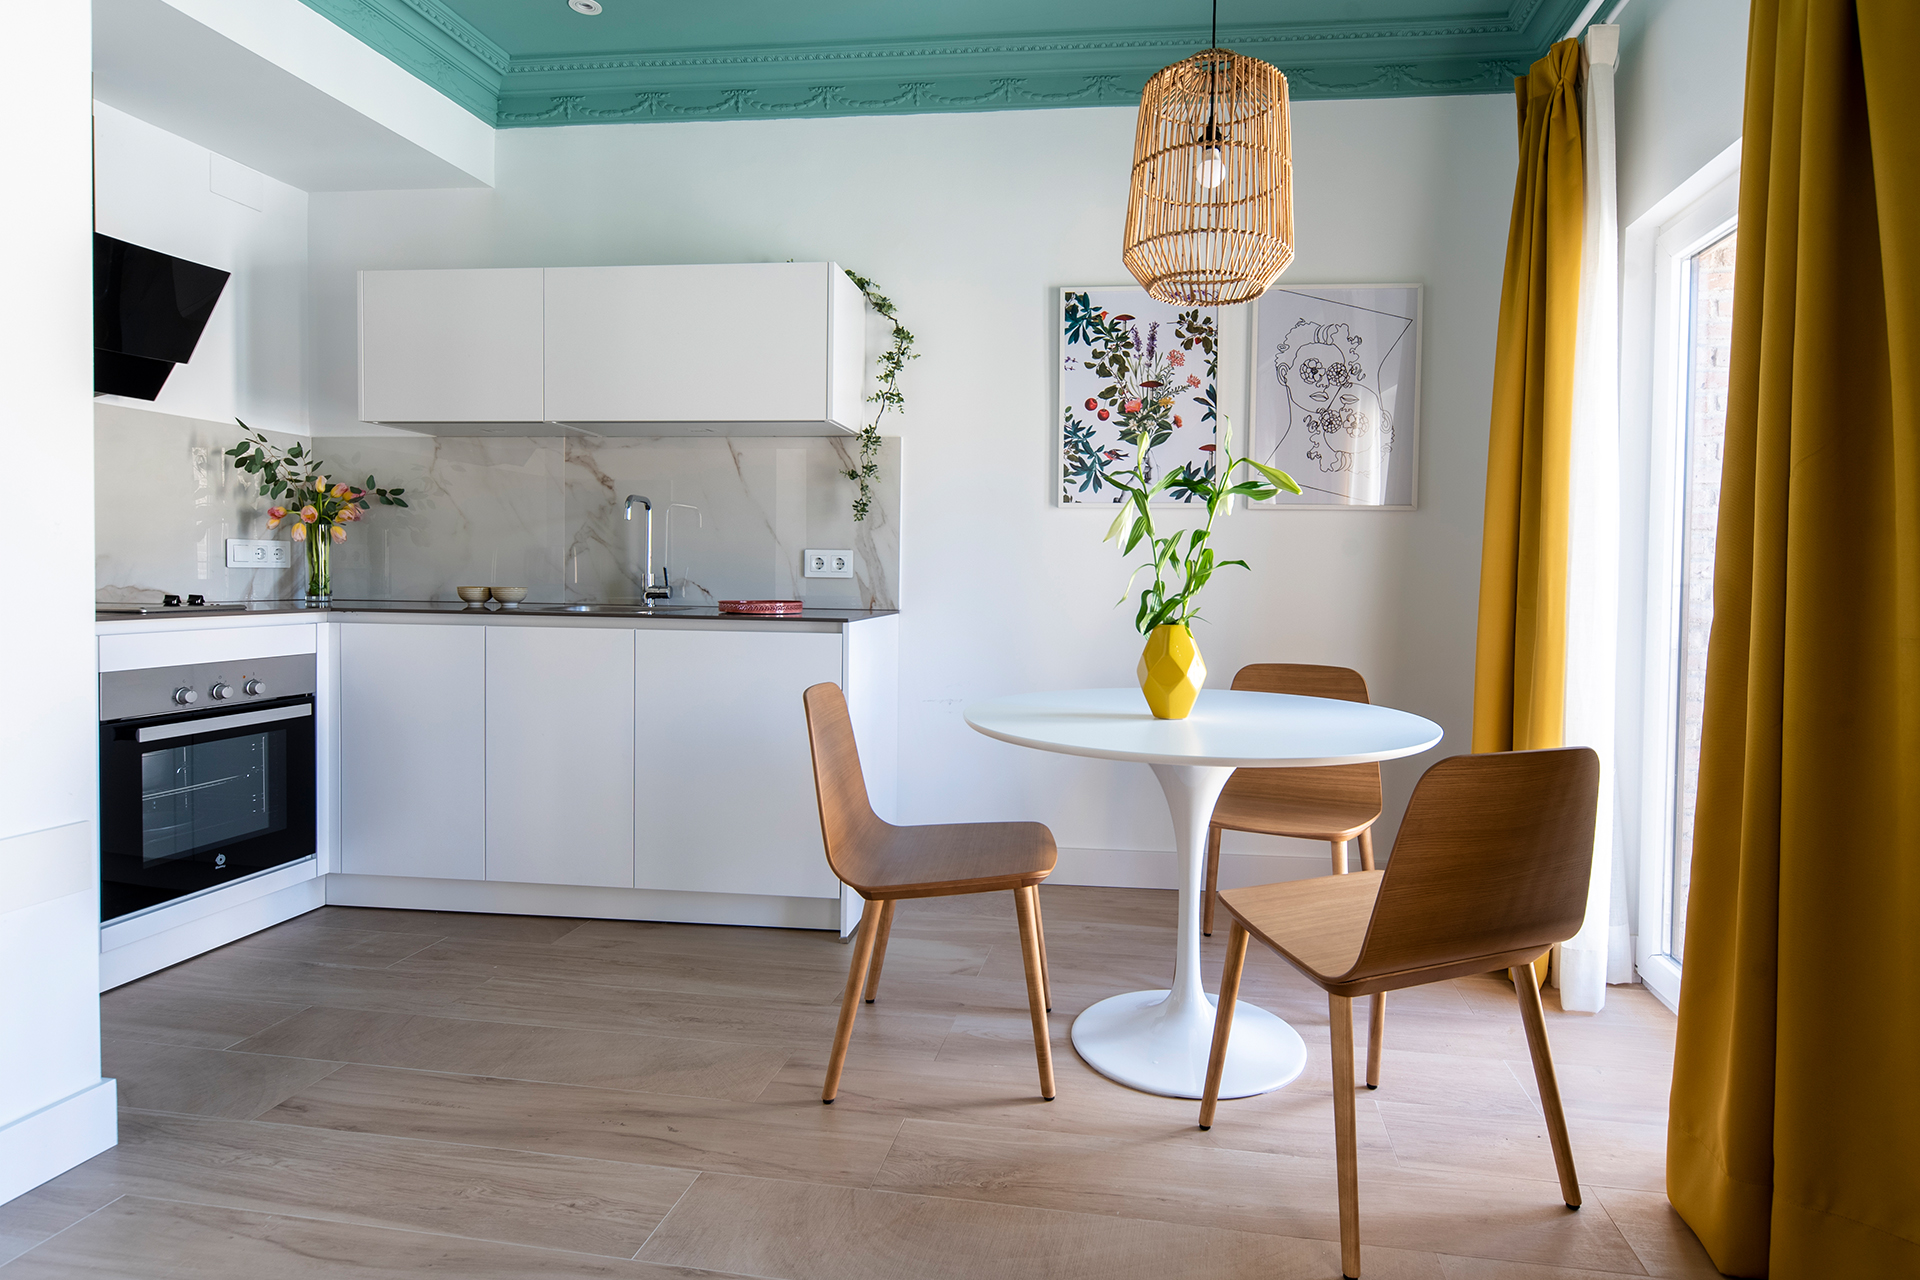 Cozinhas Santos em apartamentos turísticos, pela designer Ana Montarelo